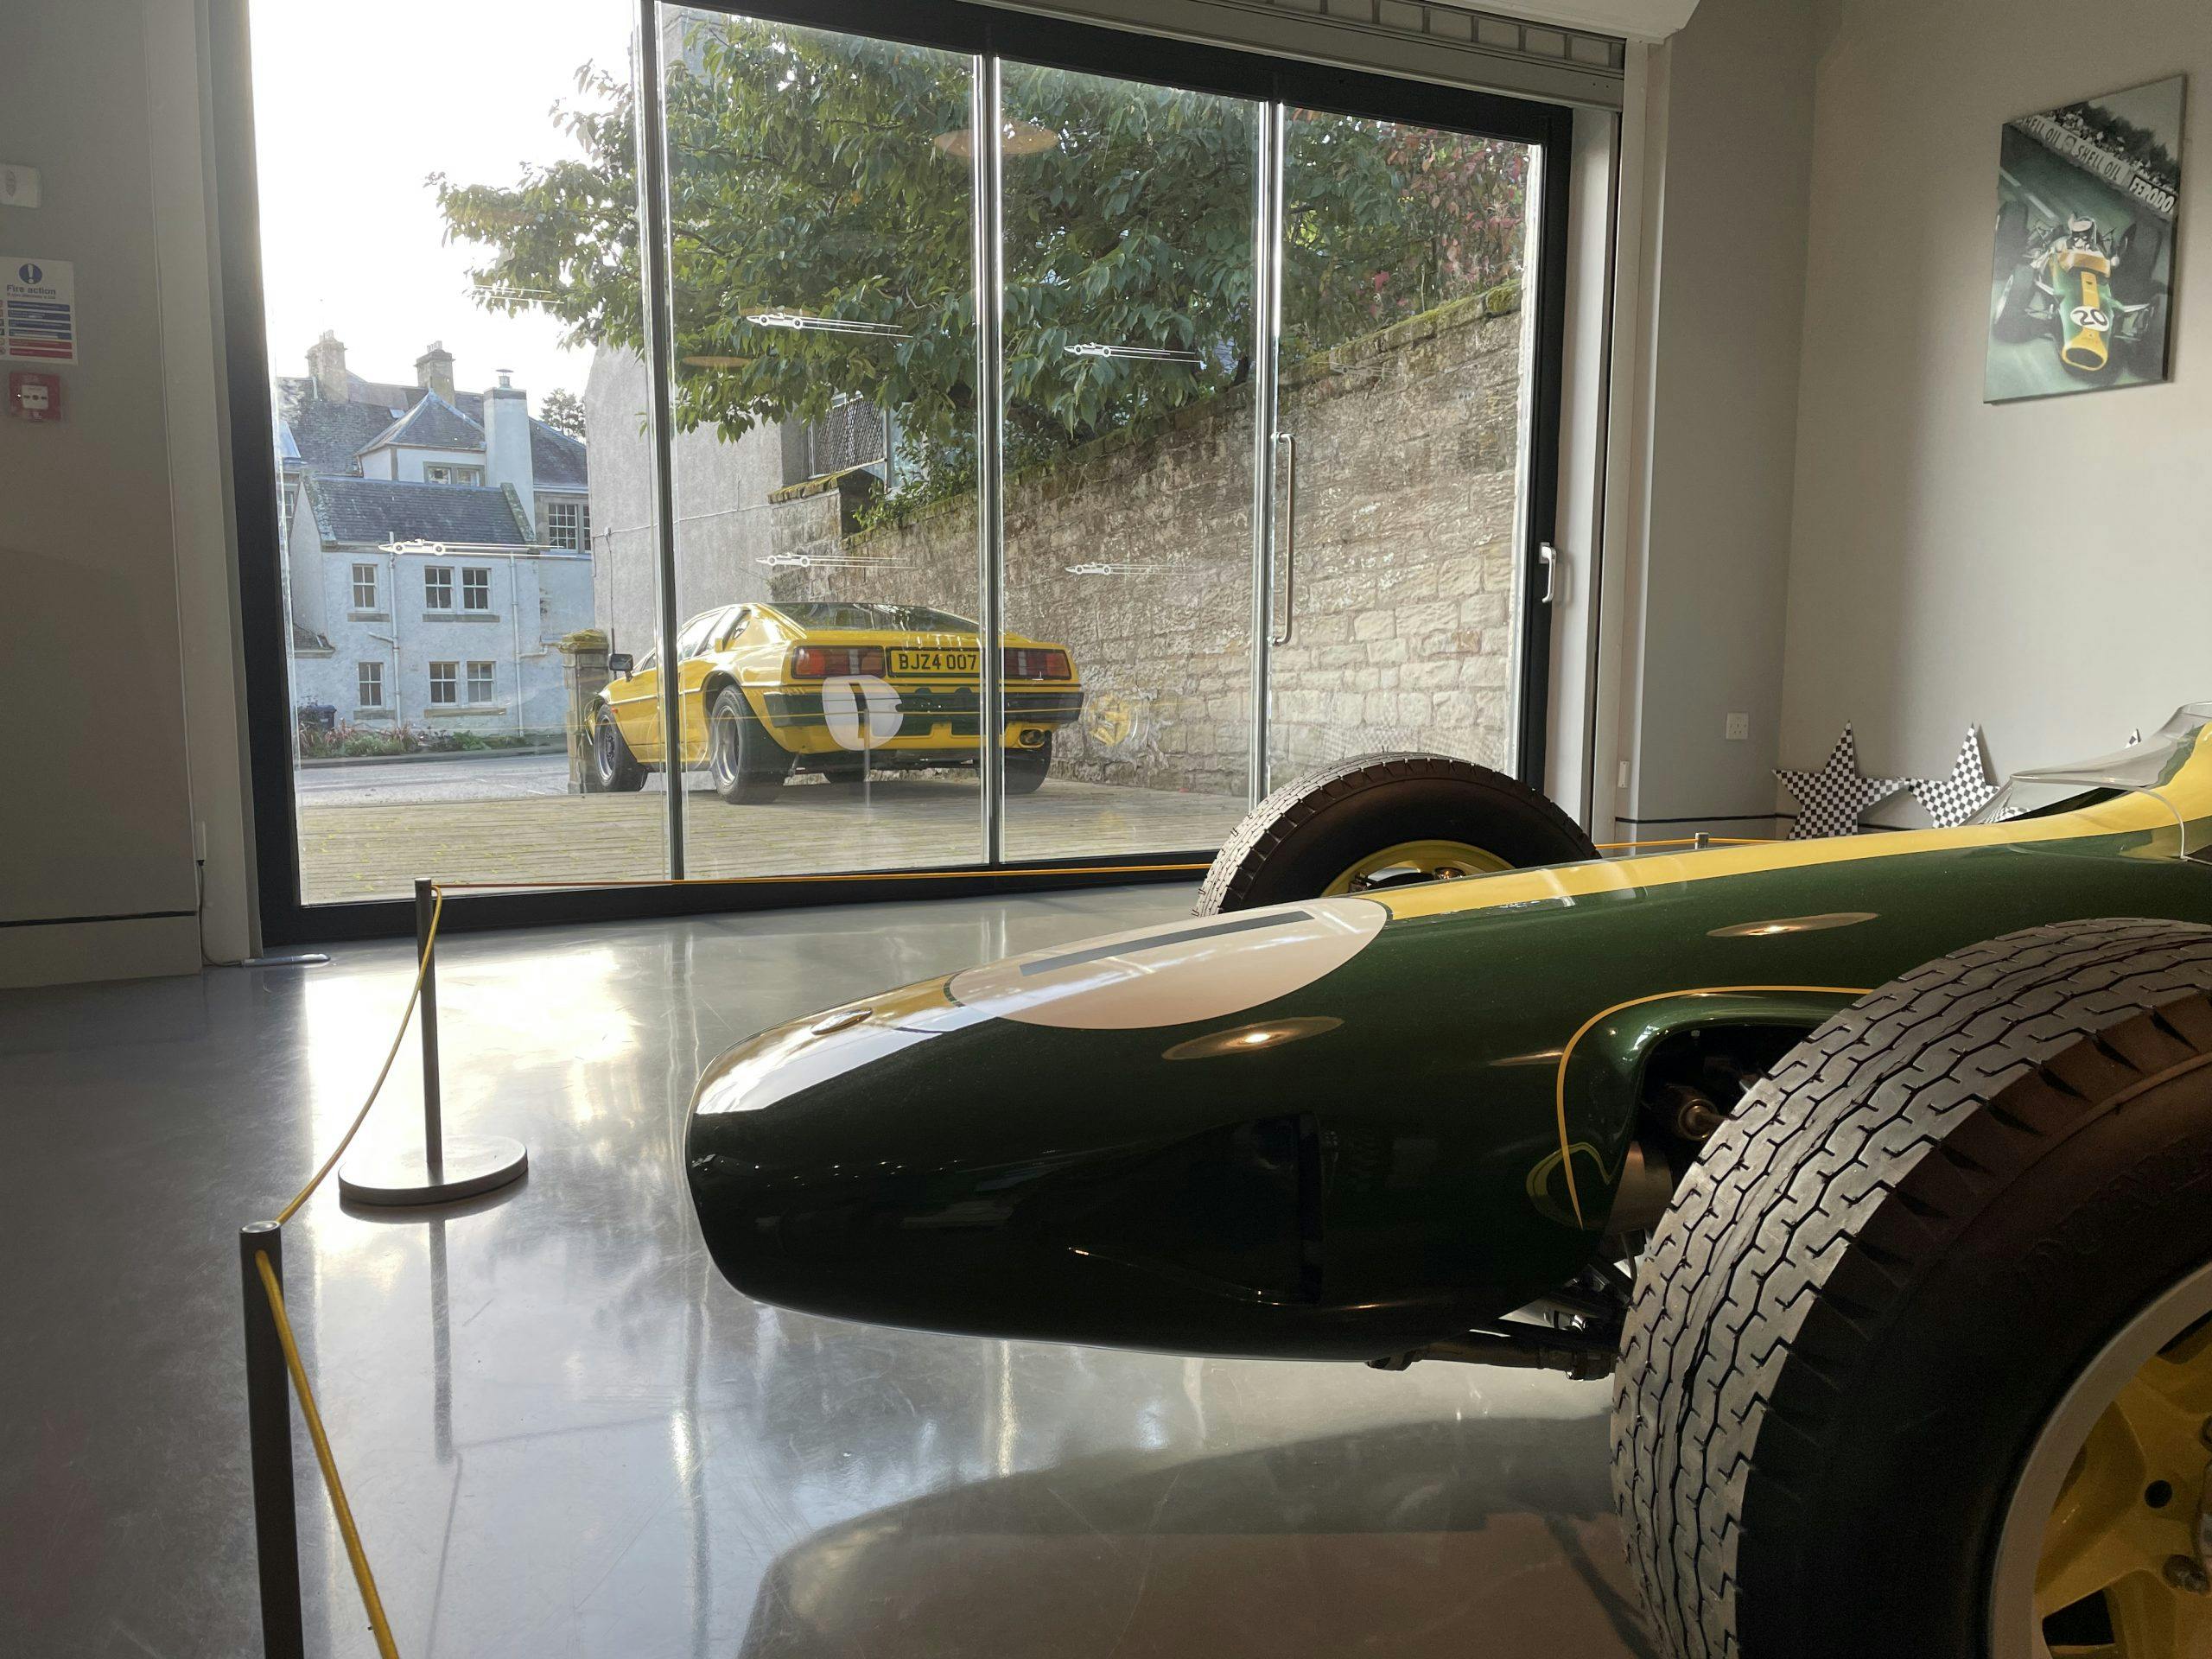 Jim Clark's Lotus 25